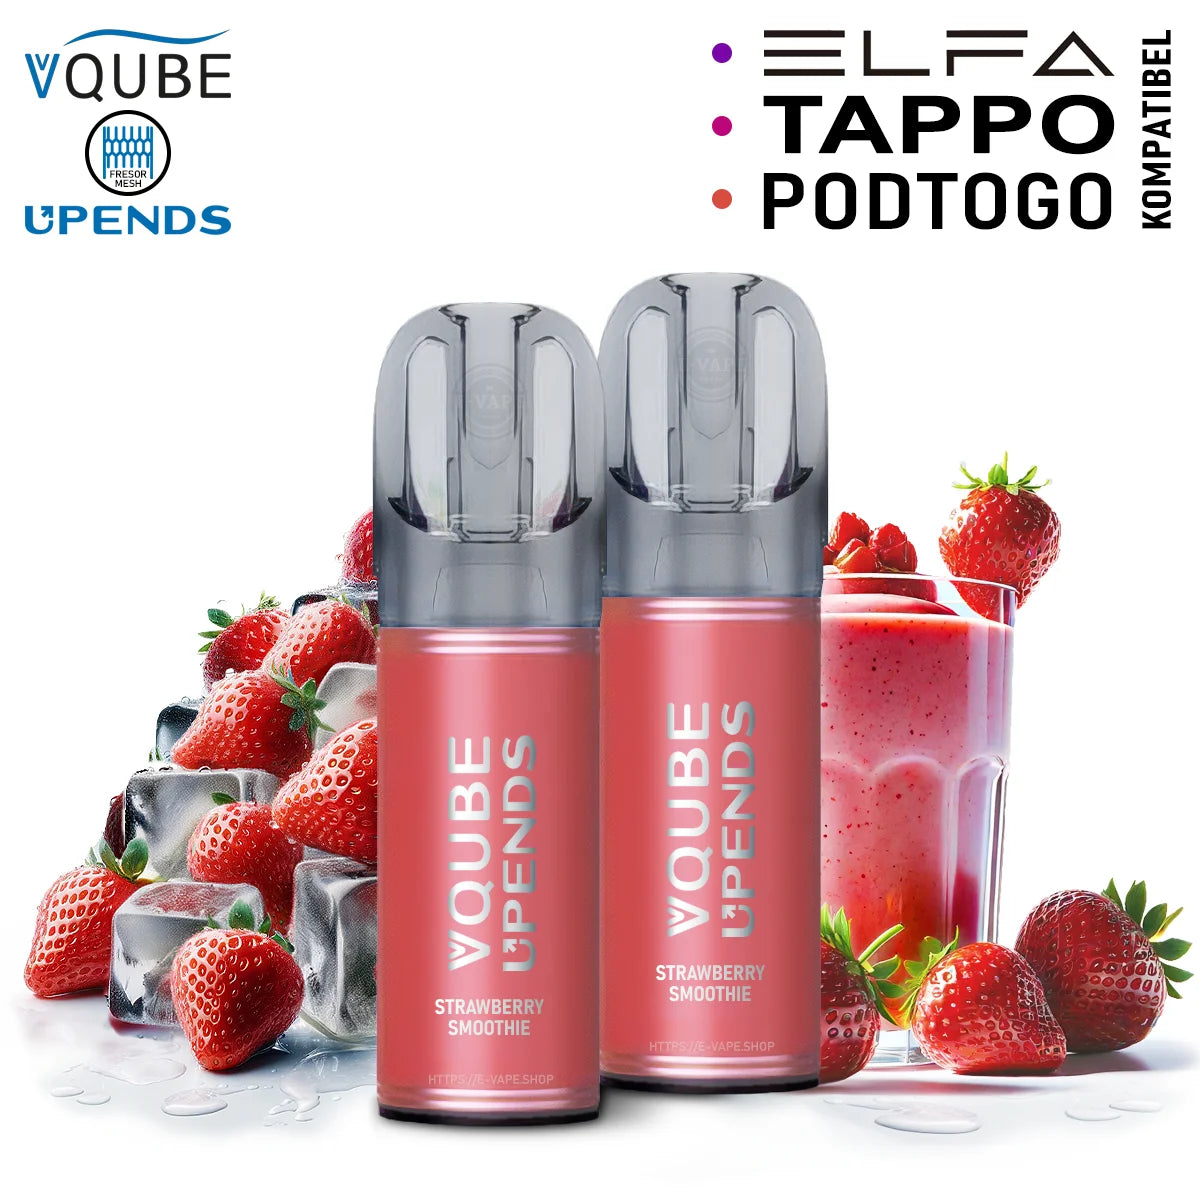 Vqube Upends Pod Strawberry Smoothie 20mg ELFA / Tappo / Pod2Go